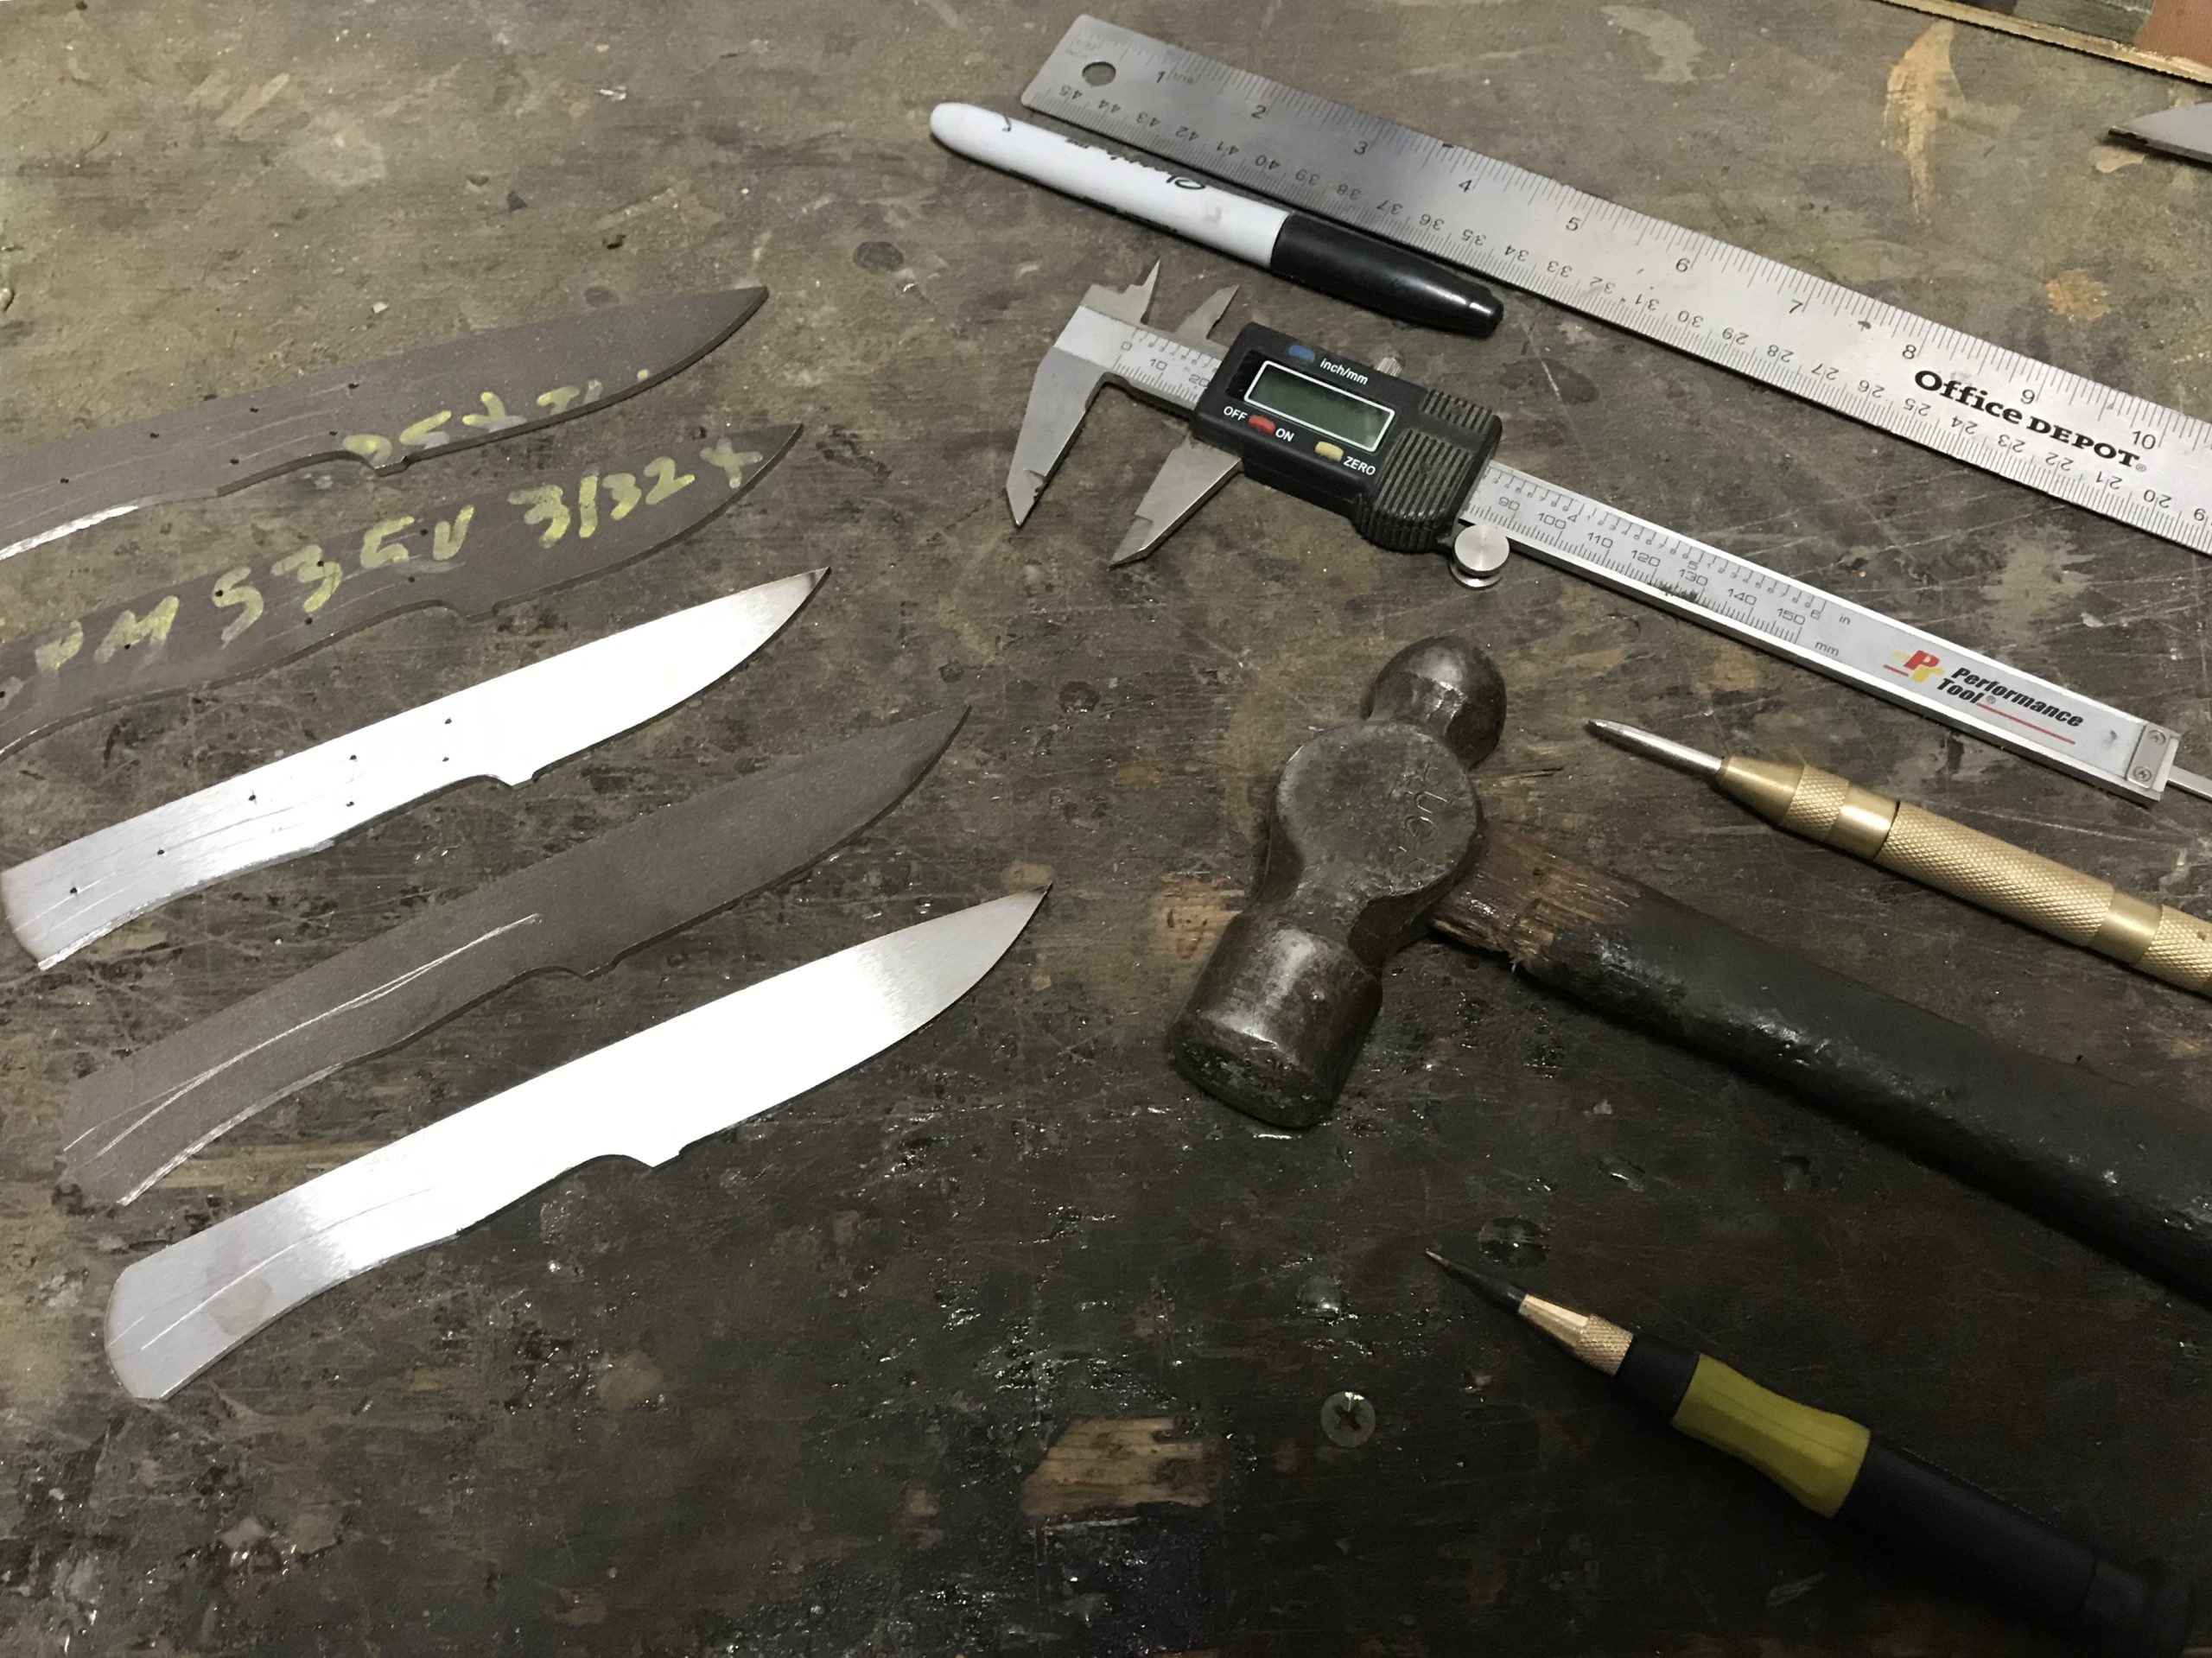 Beginning Knifemaking - What Equipment Do I Need?